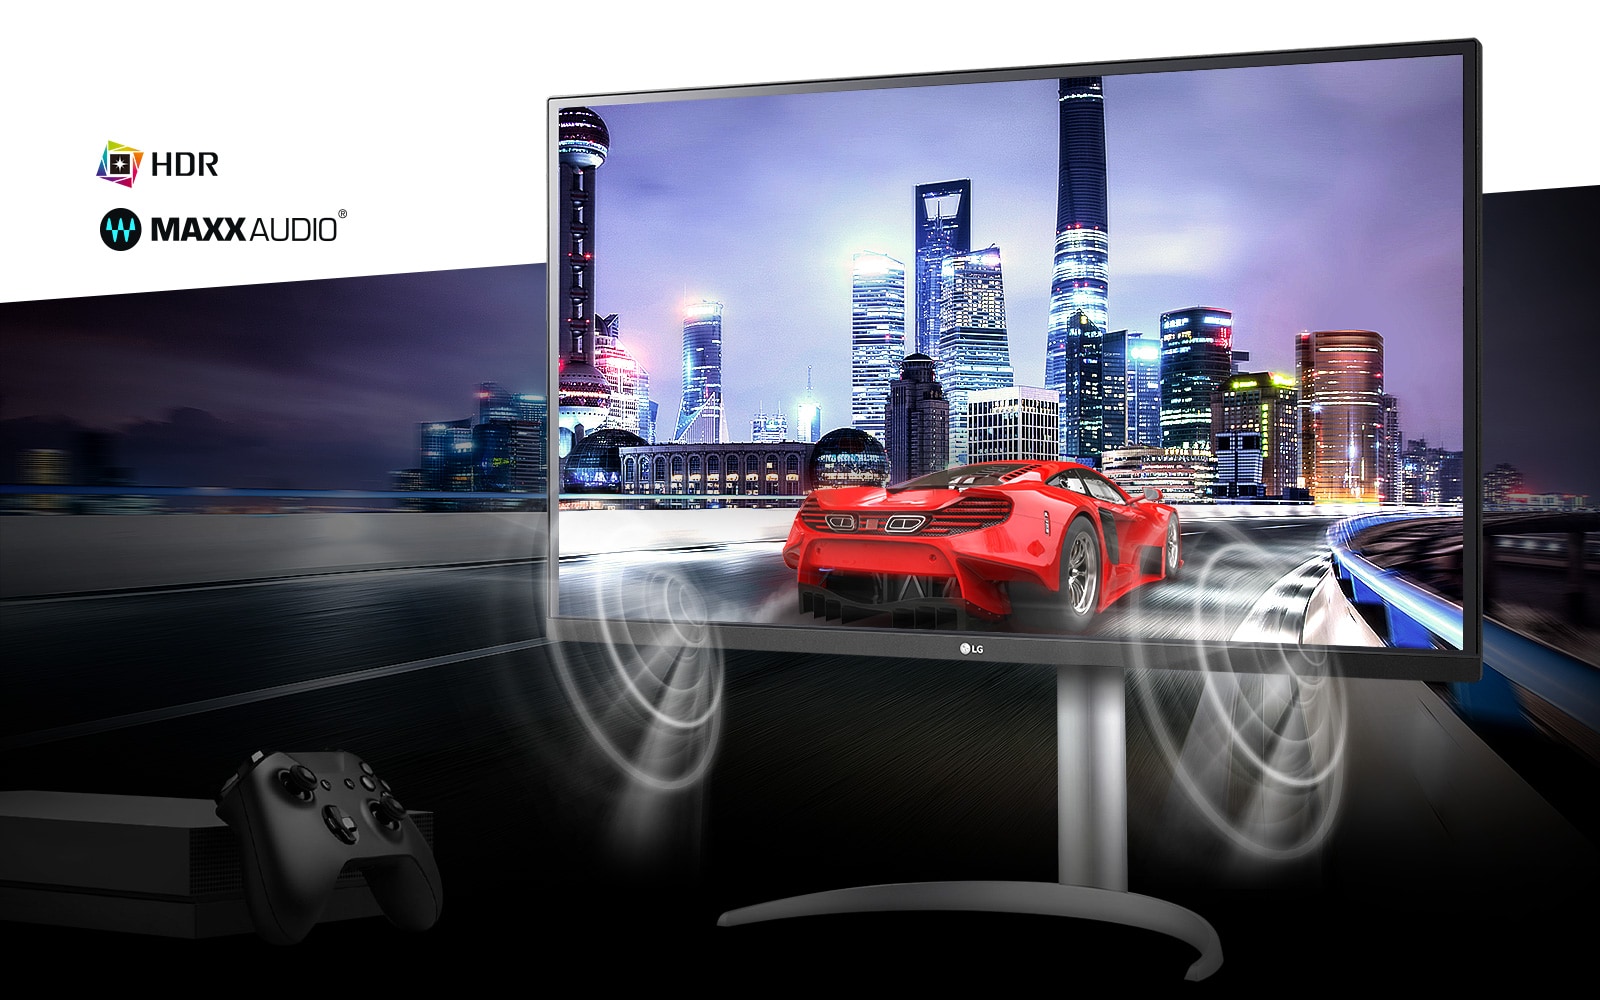 סצנת מכונית הגיימינג מקונסולת משחקים באיכות 4K HDR אמיתית עם ®MAXXAUDIO